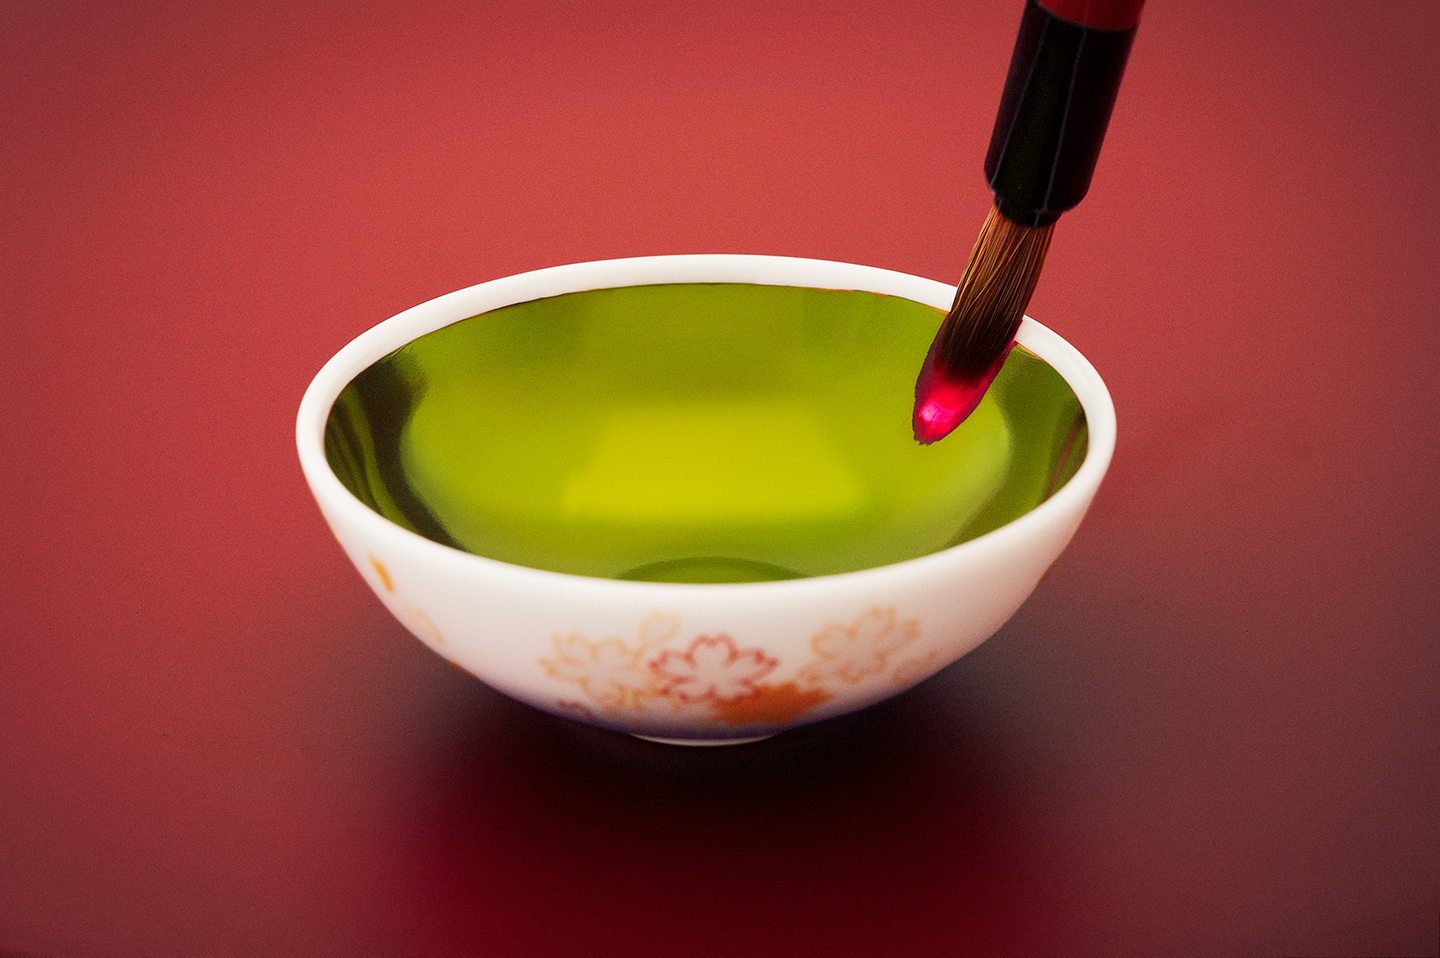 【Edo Tokyo Rethink】Le charme renouvelé de la « bonne vieille recette » du rouge à lèvres komachi-beni d’Isehan-Honten